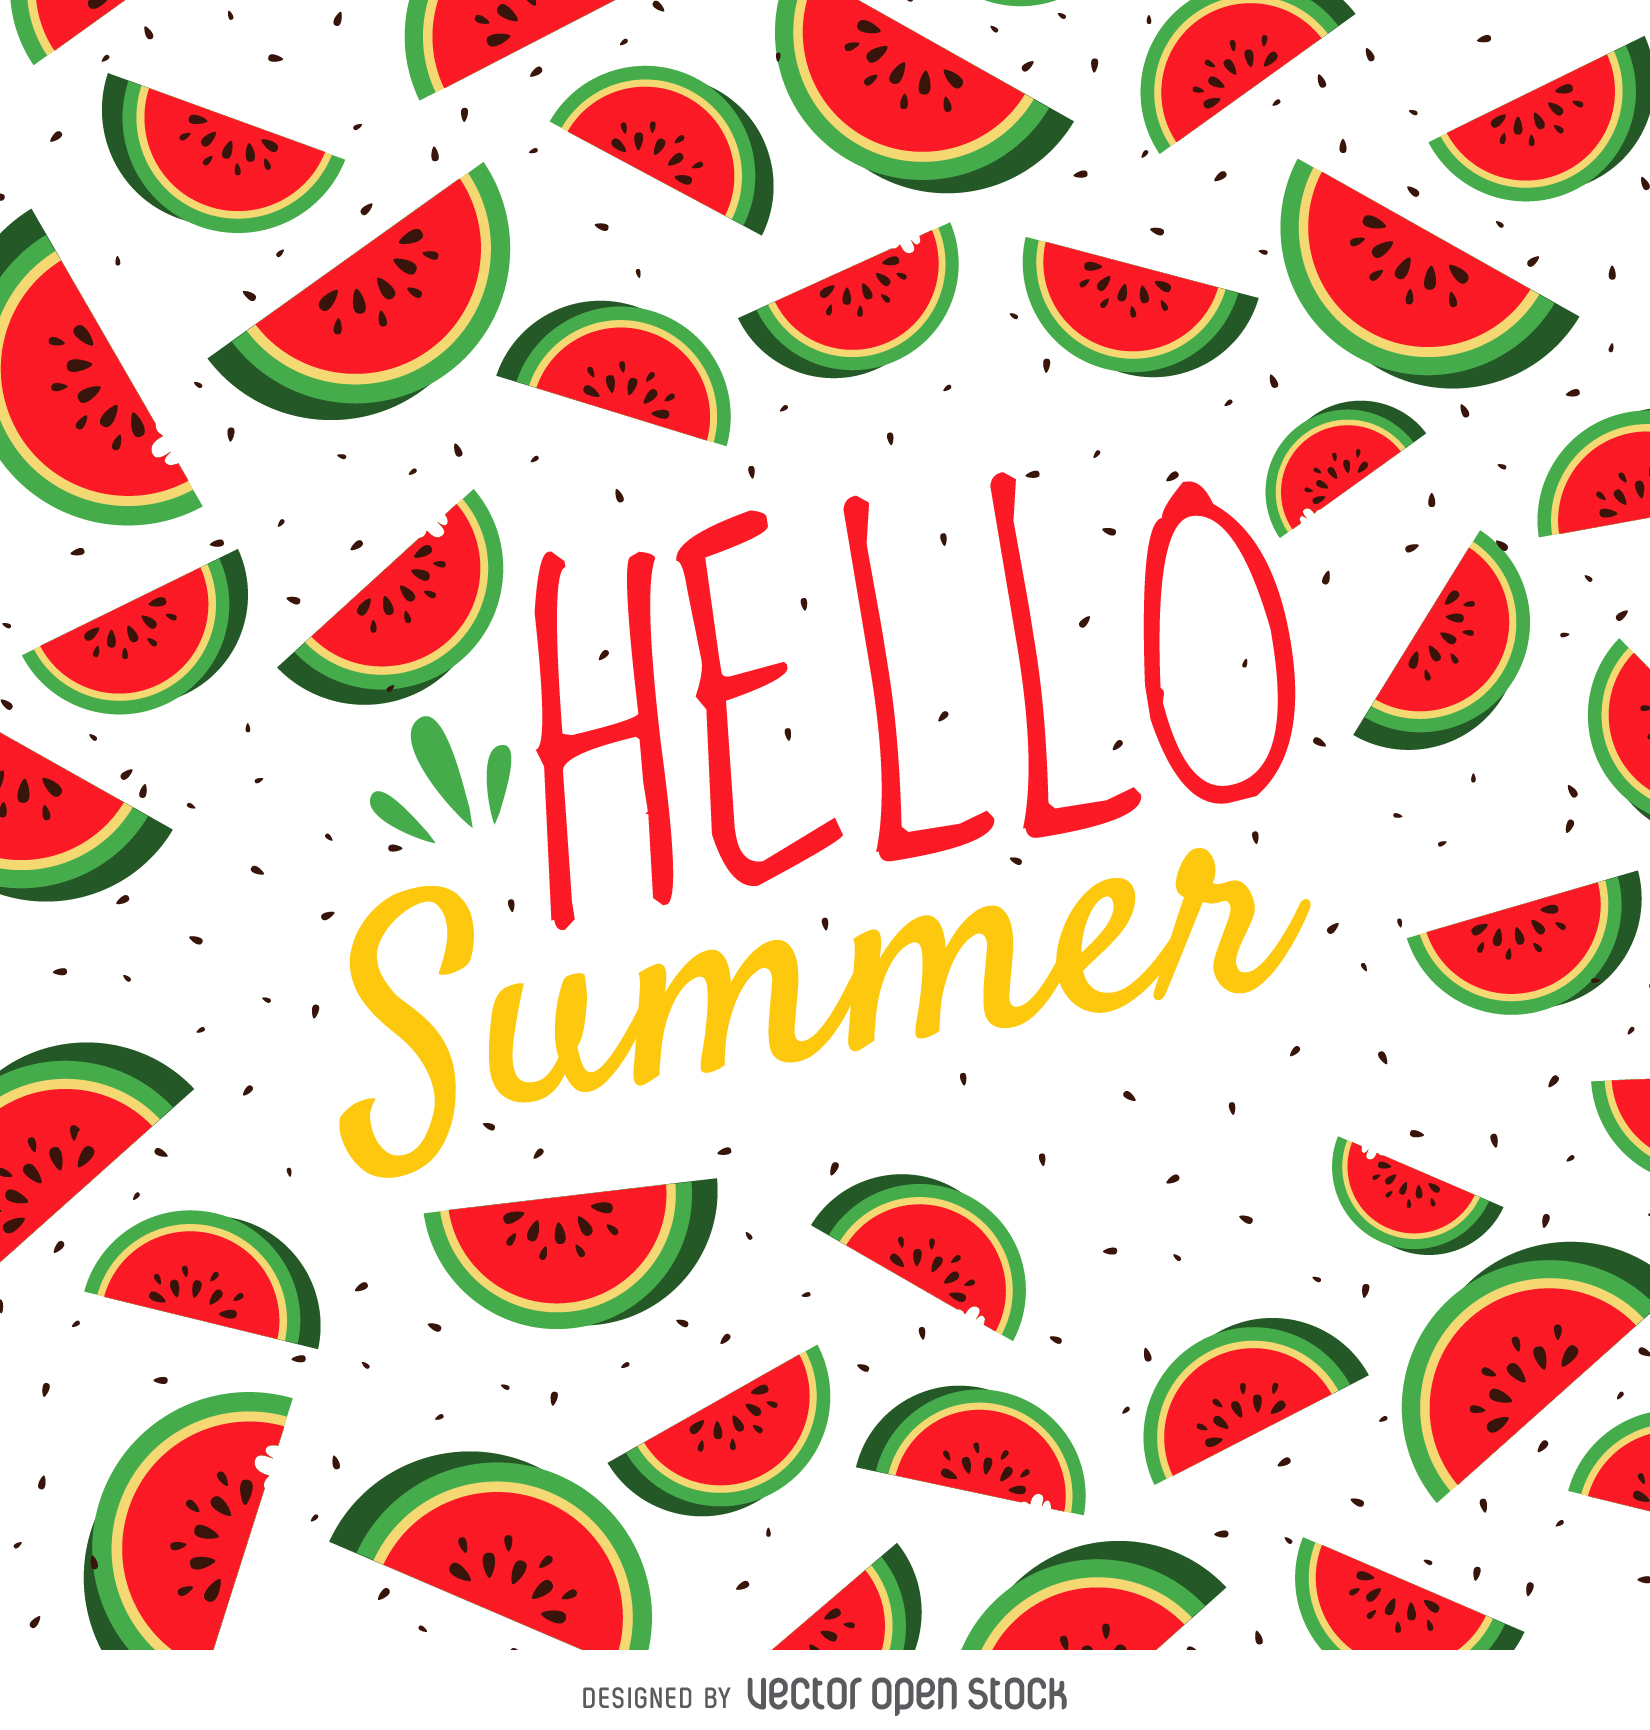 Summer watermelon poster Vector. Summer calligraphy, Hello summer, Summer watermelon